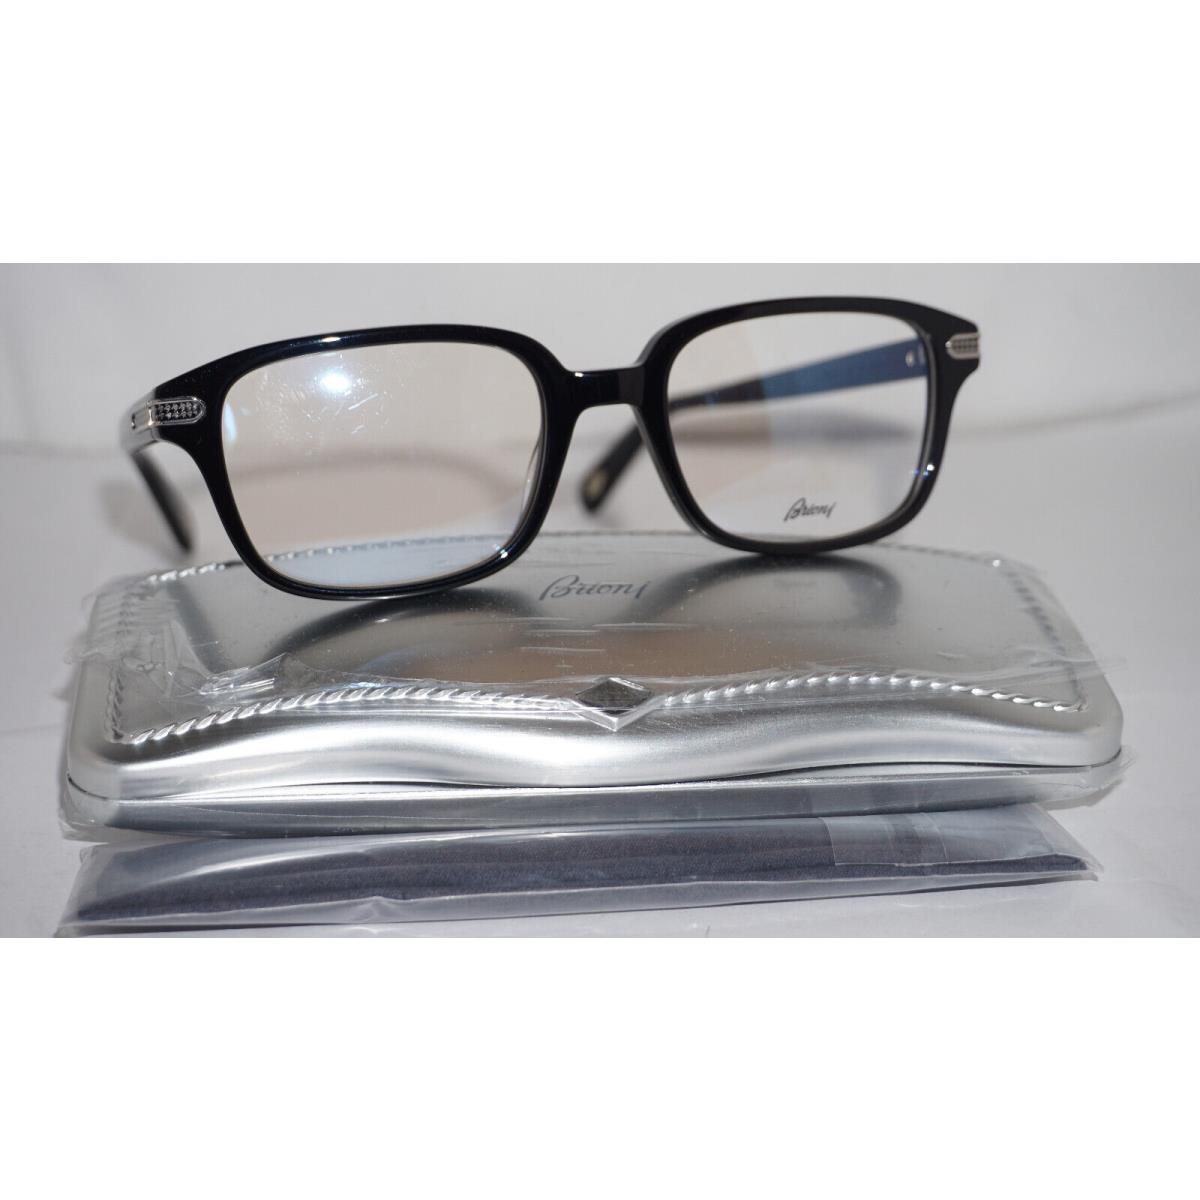 Brioni Eyeglasses Silver Black Transparent BR0044O 001 52 20 145